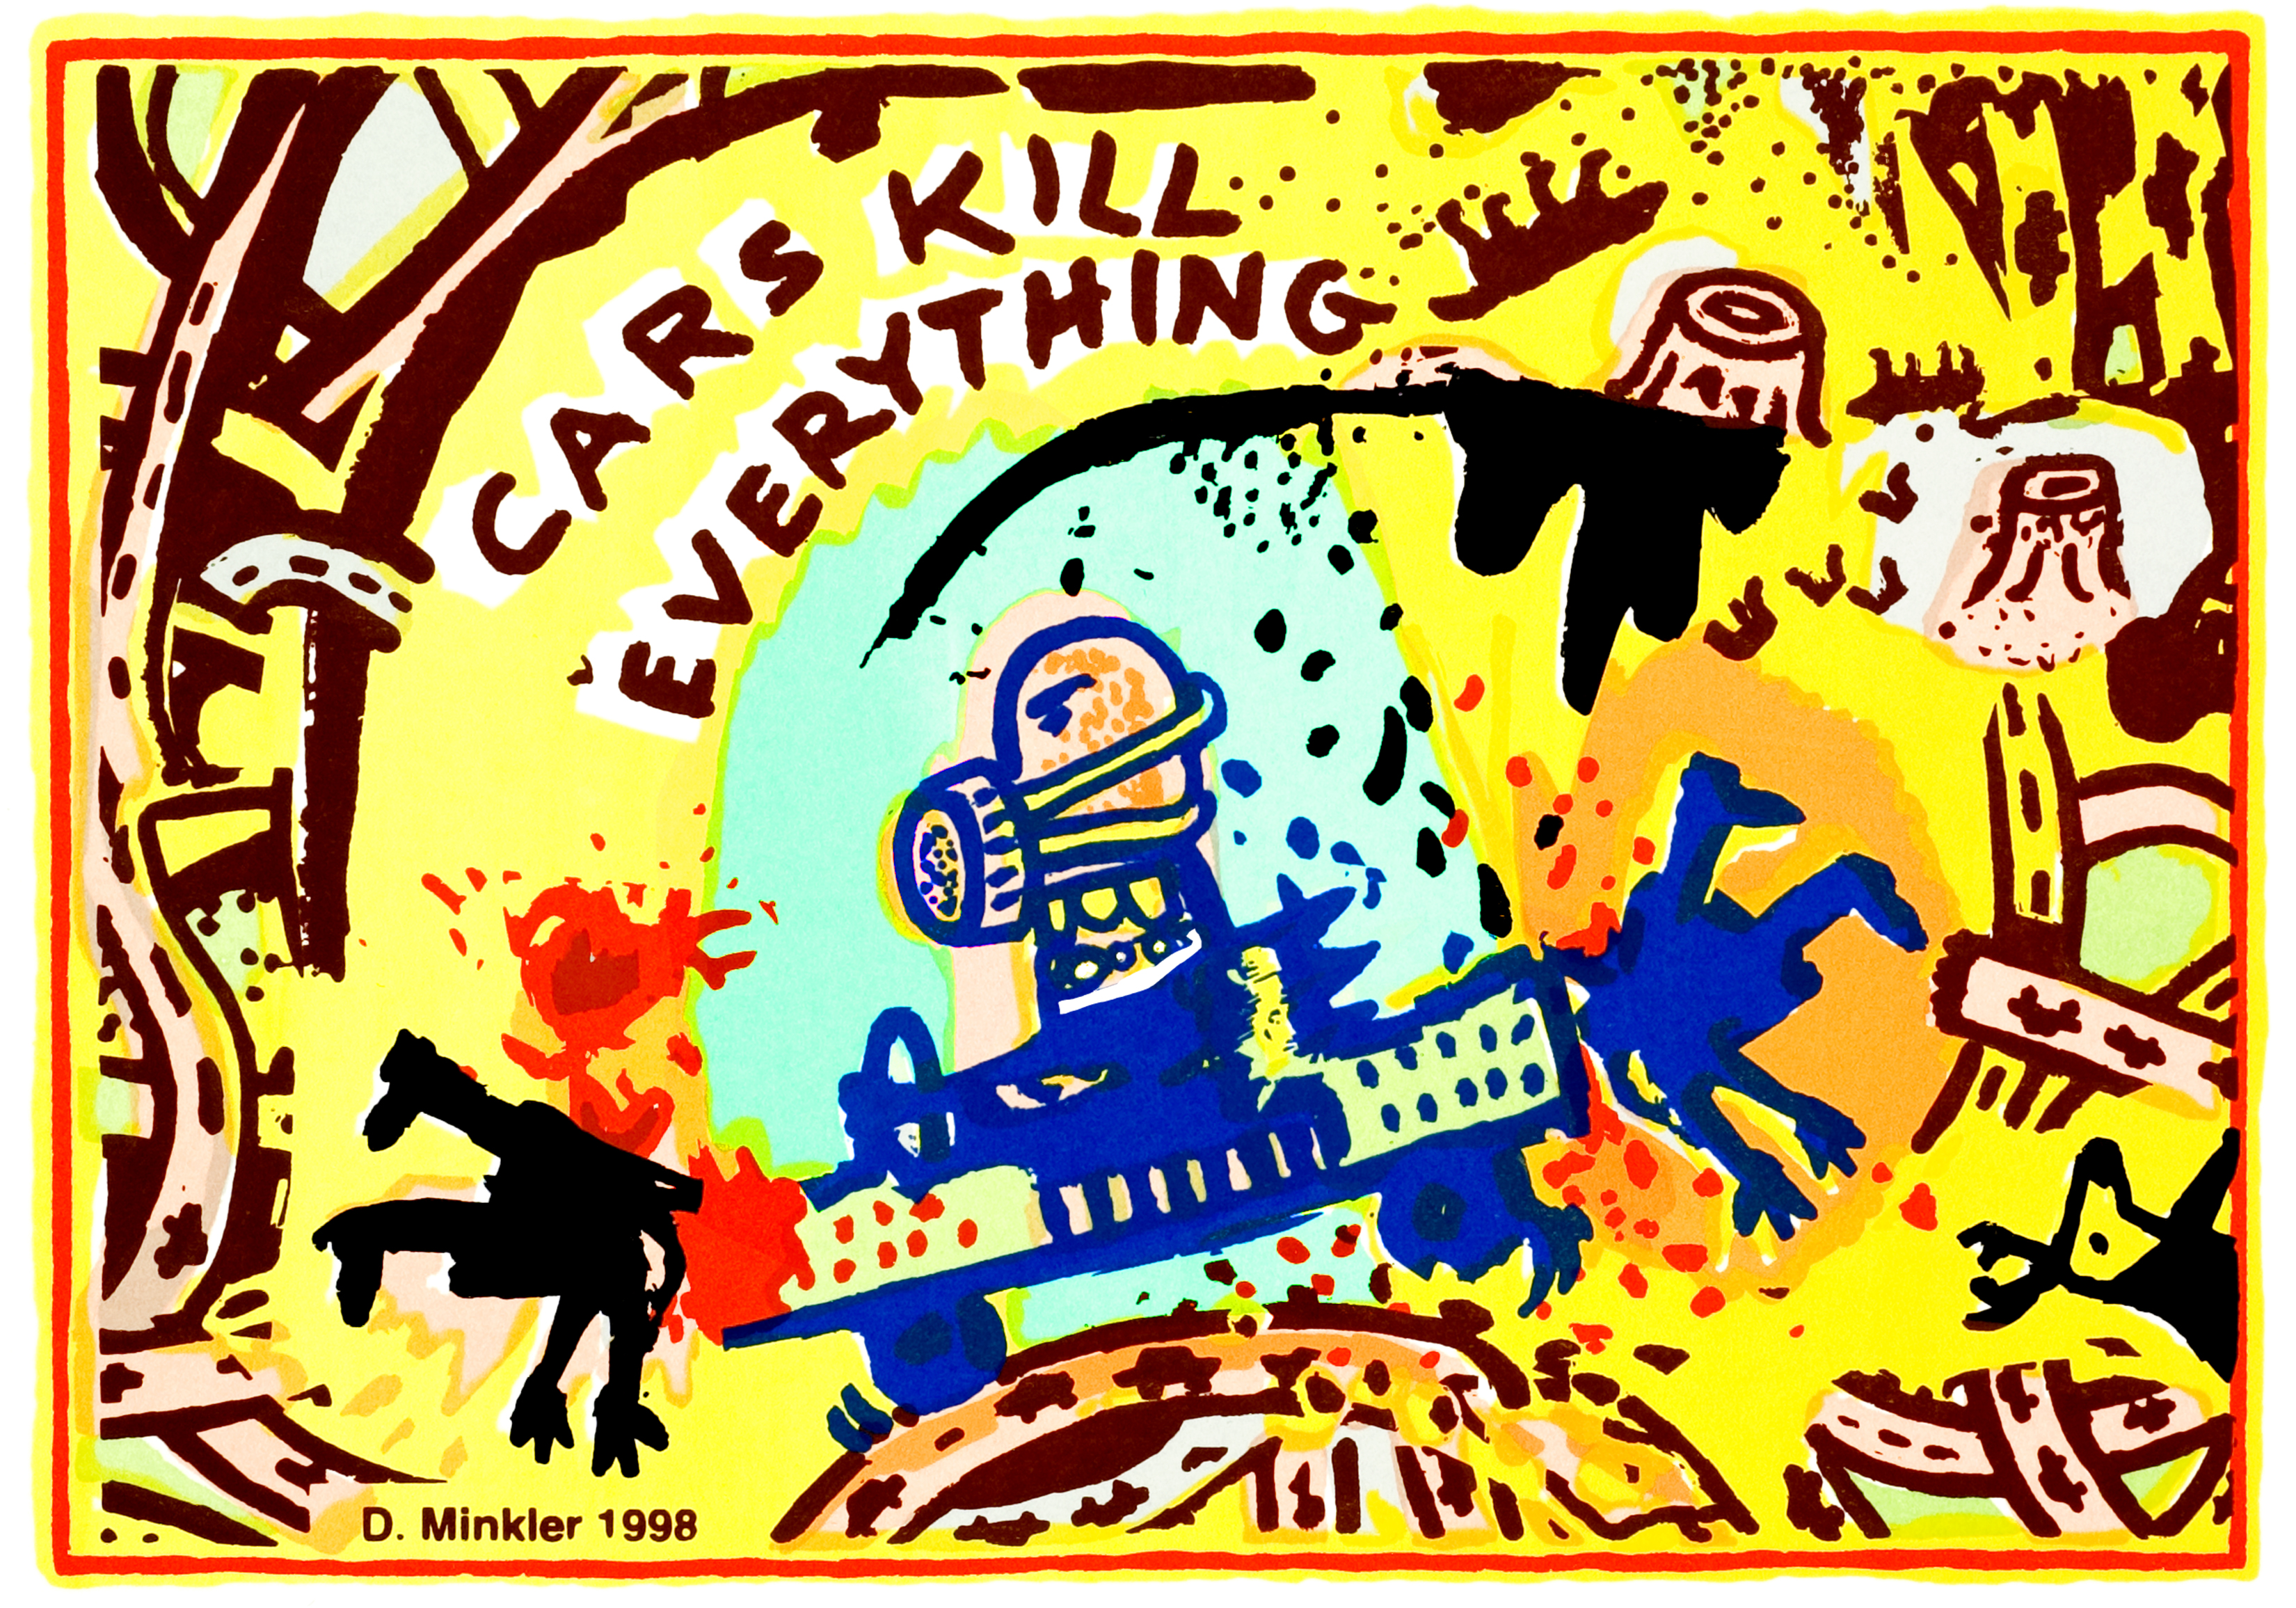 Cars Kill Everything (Copyright 1998 Douglas Minkler)